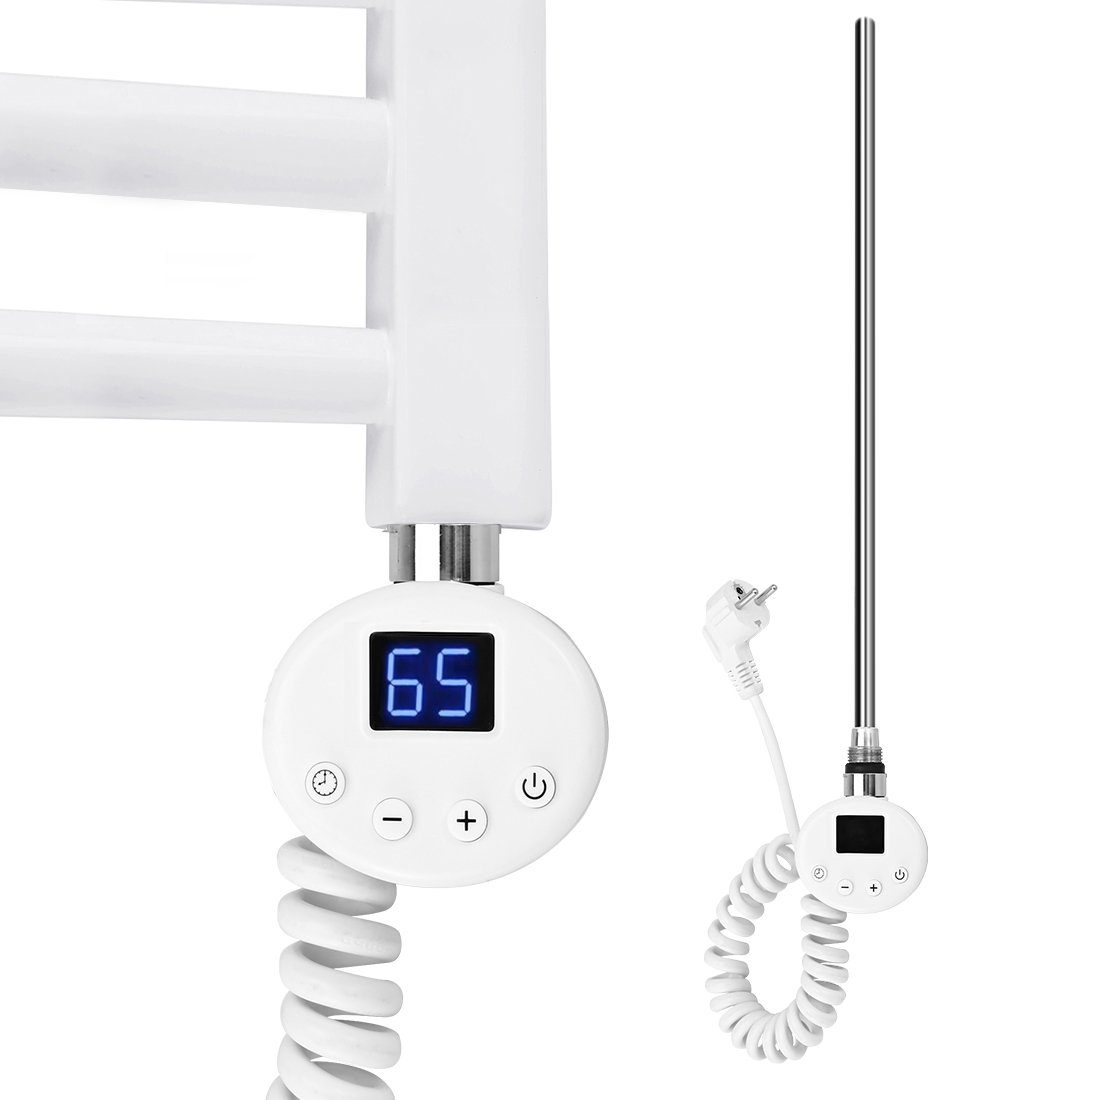 S'AFIELINA Heizstab Heizpatrone mit digitalem Thermostat für Badheizkörper, Edelstahl Weiß